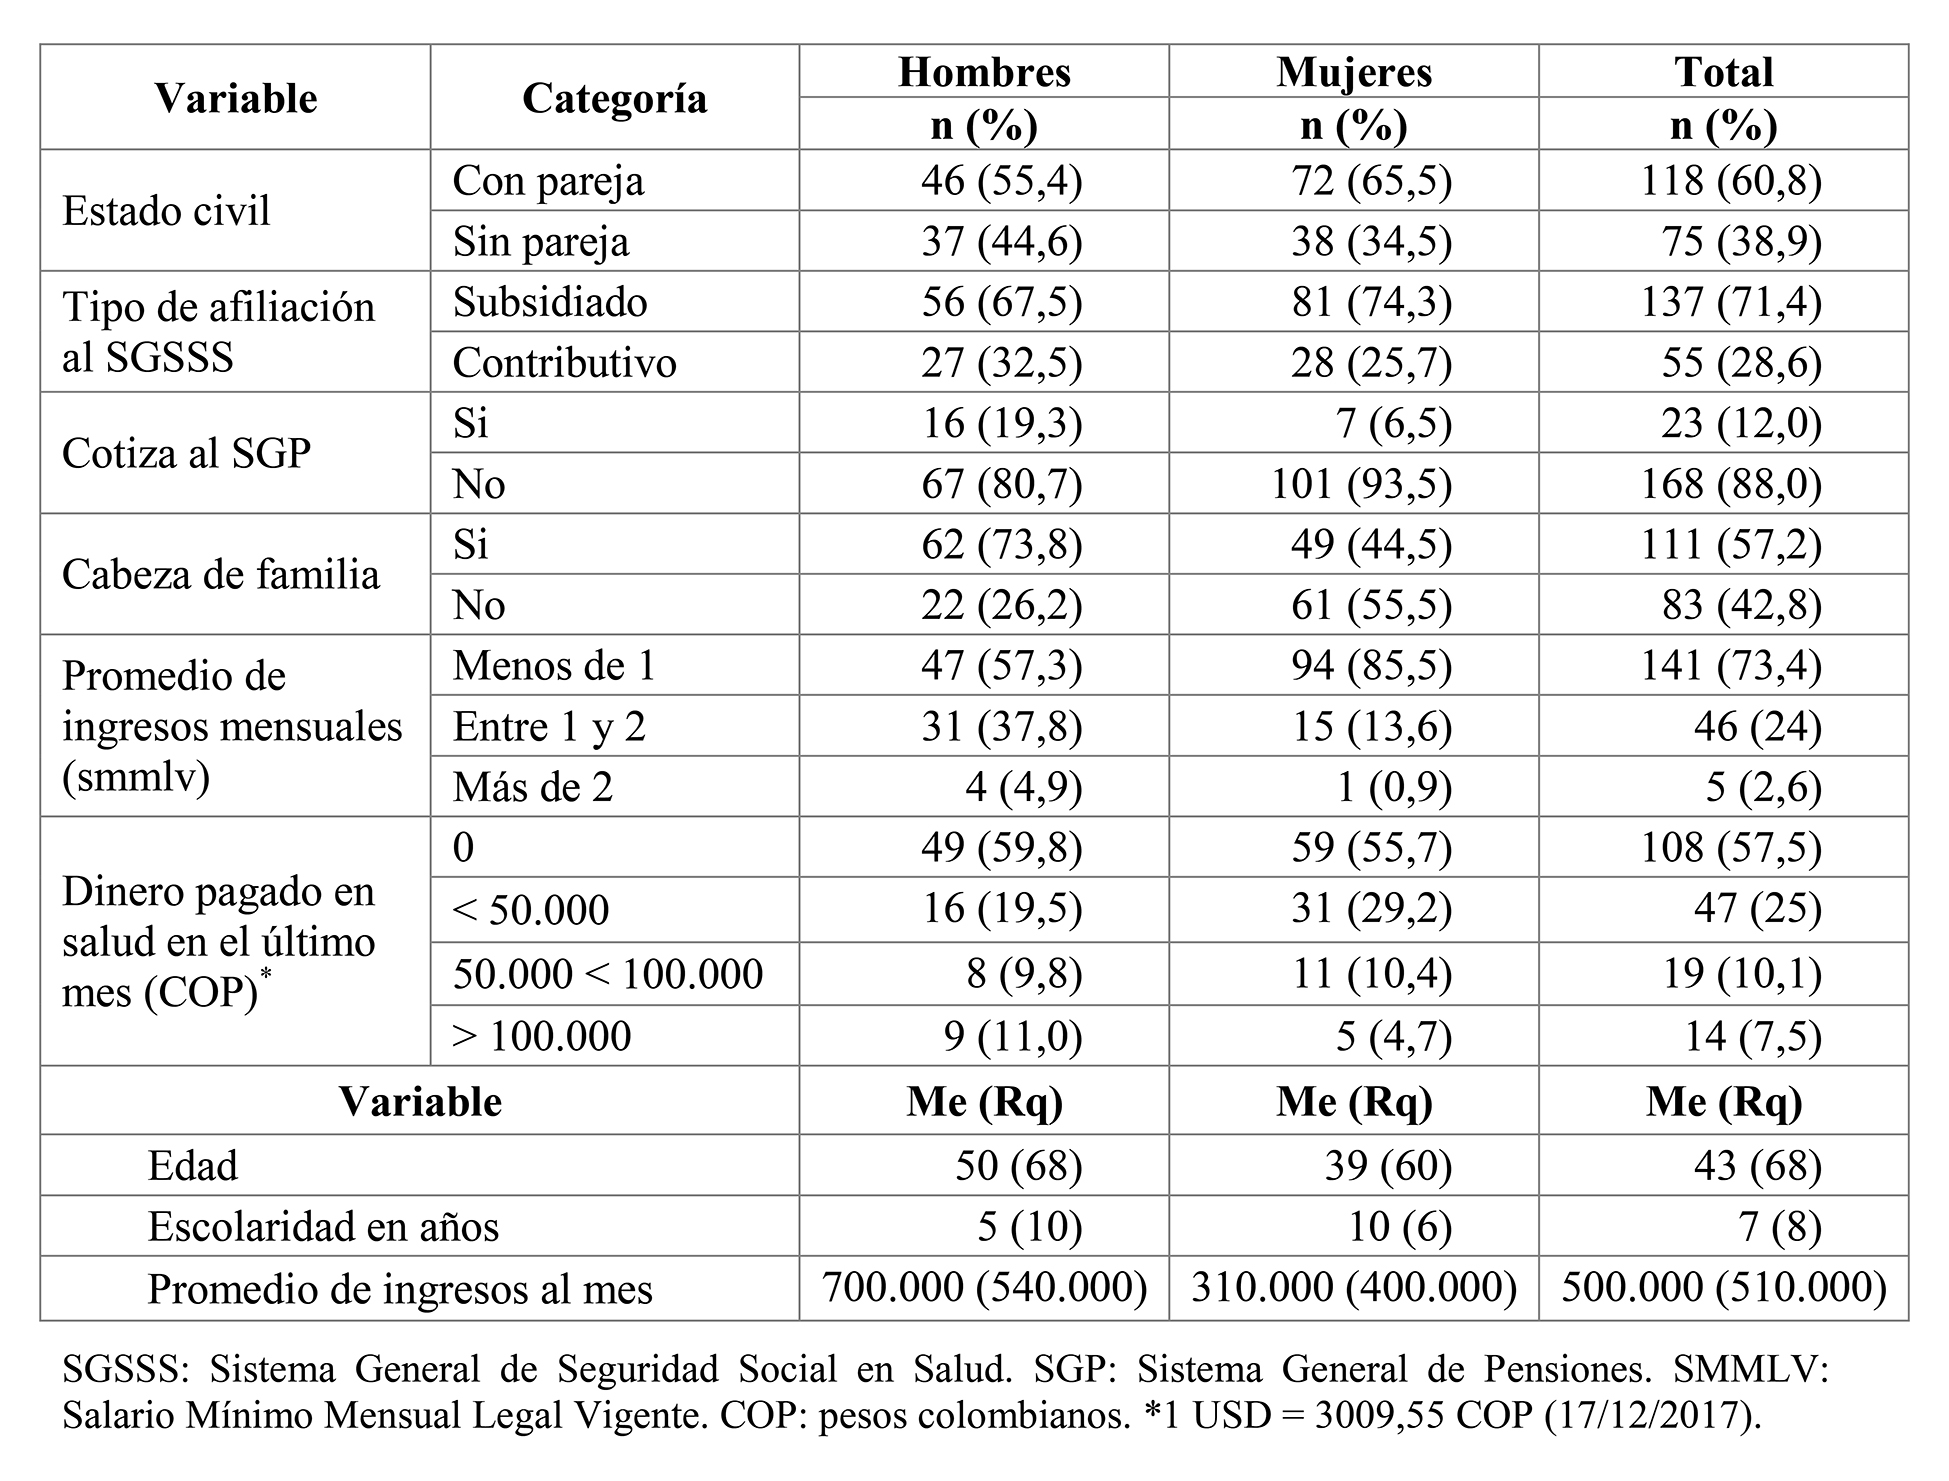 Distribución de frecuencias, porcentajes y estadísticos descriptivos de las variables sociodemográficas de los trabajadores participantes en el estudio. N=194